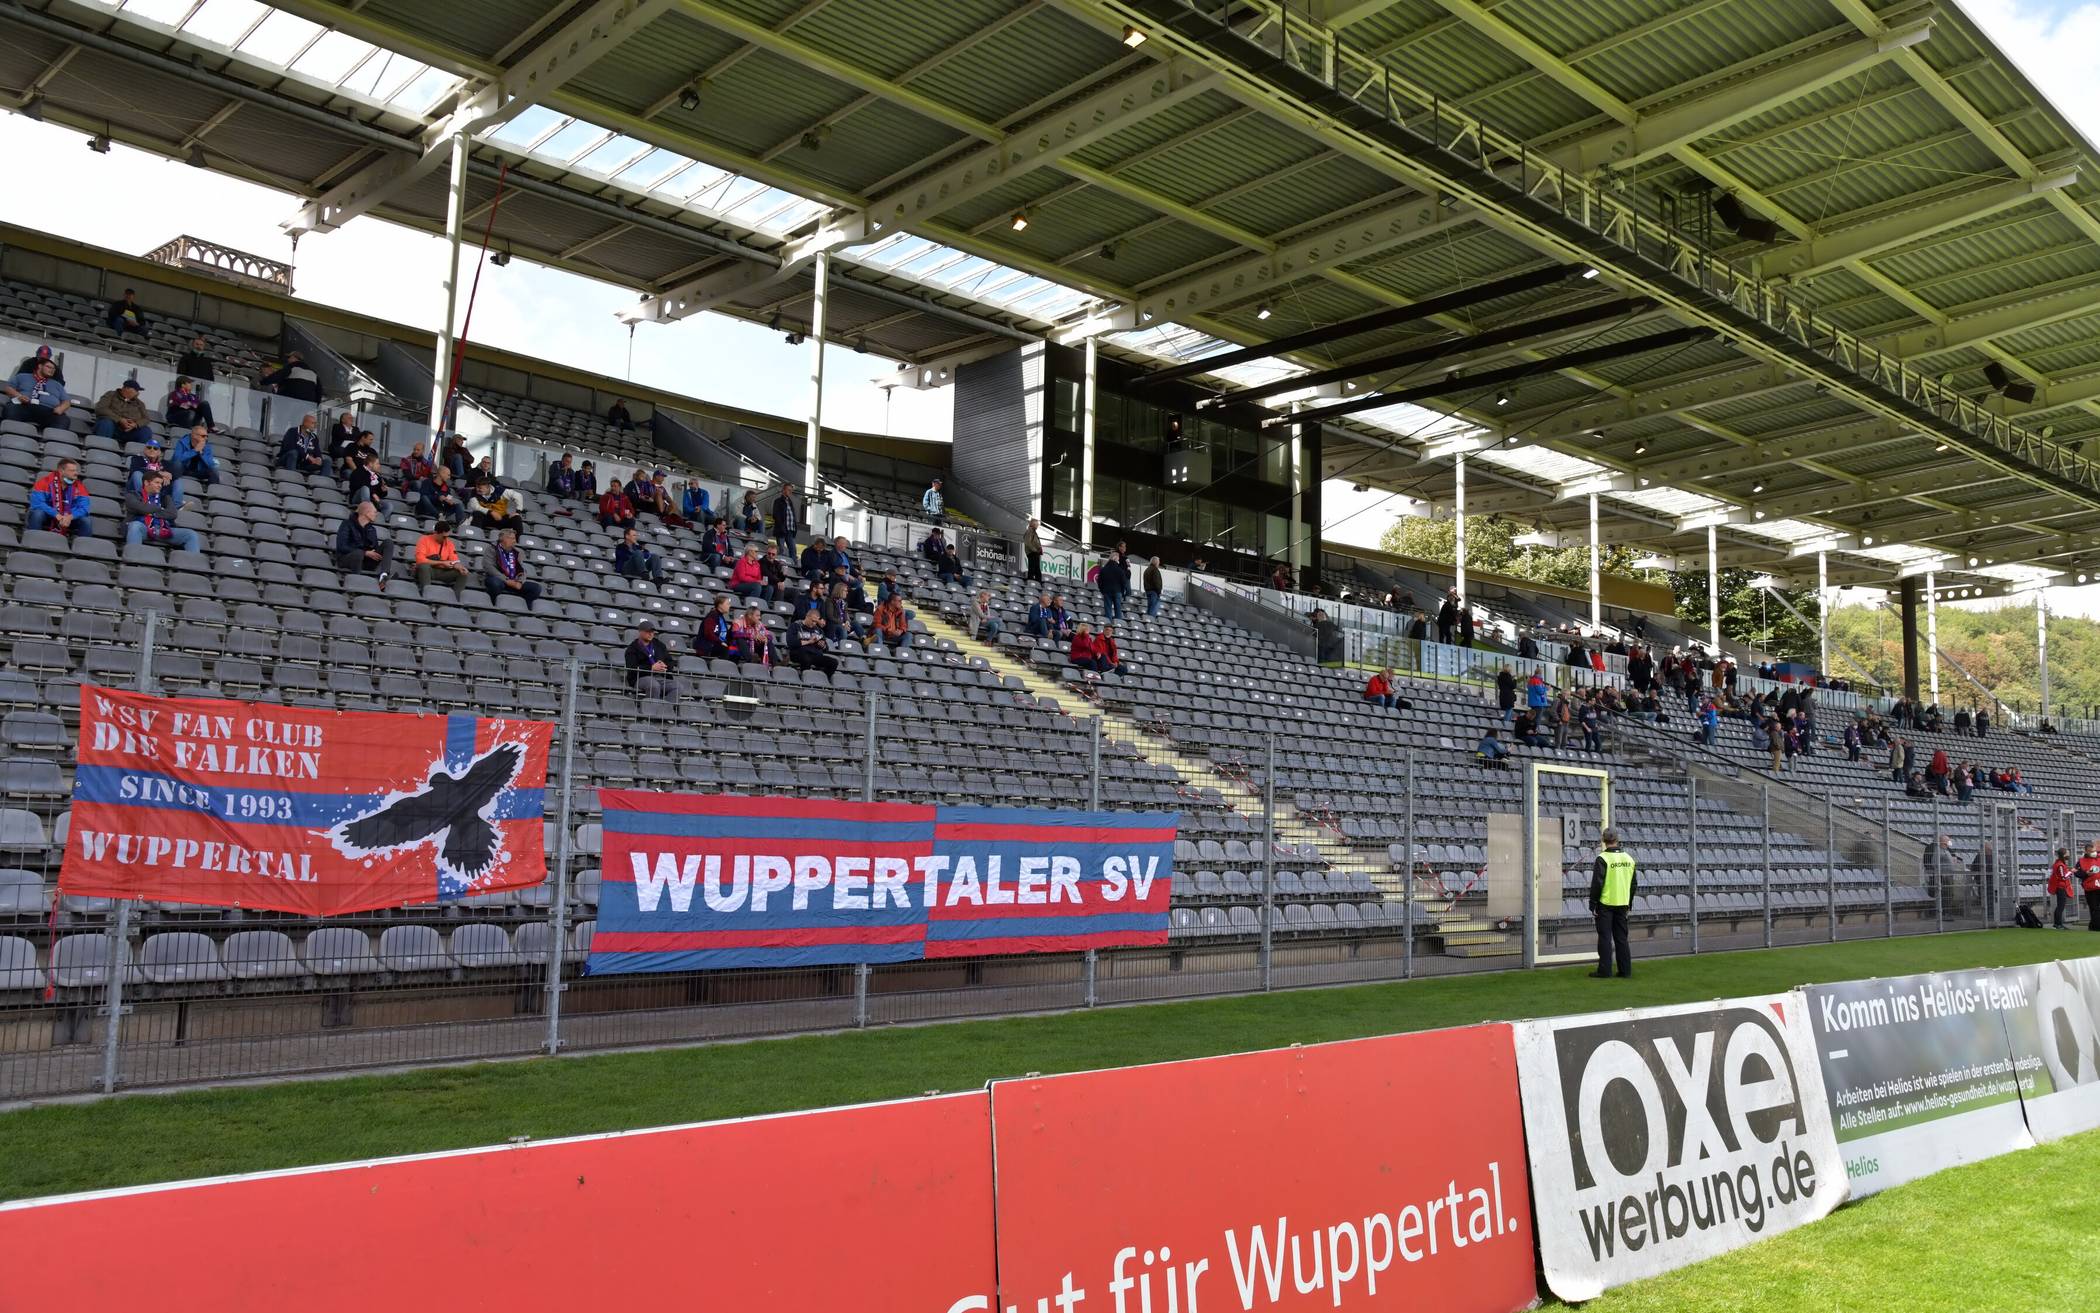  Im September 2020 durften Fans im Heimspiel gegen RW Ahlen auf die Haupttribüne. 